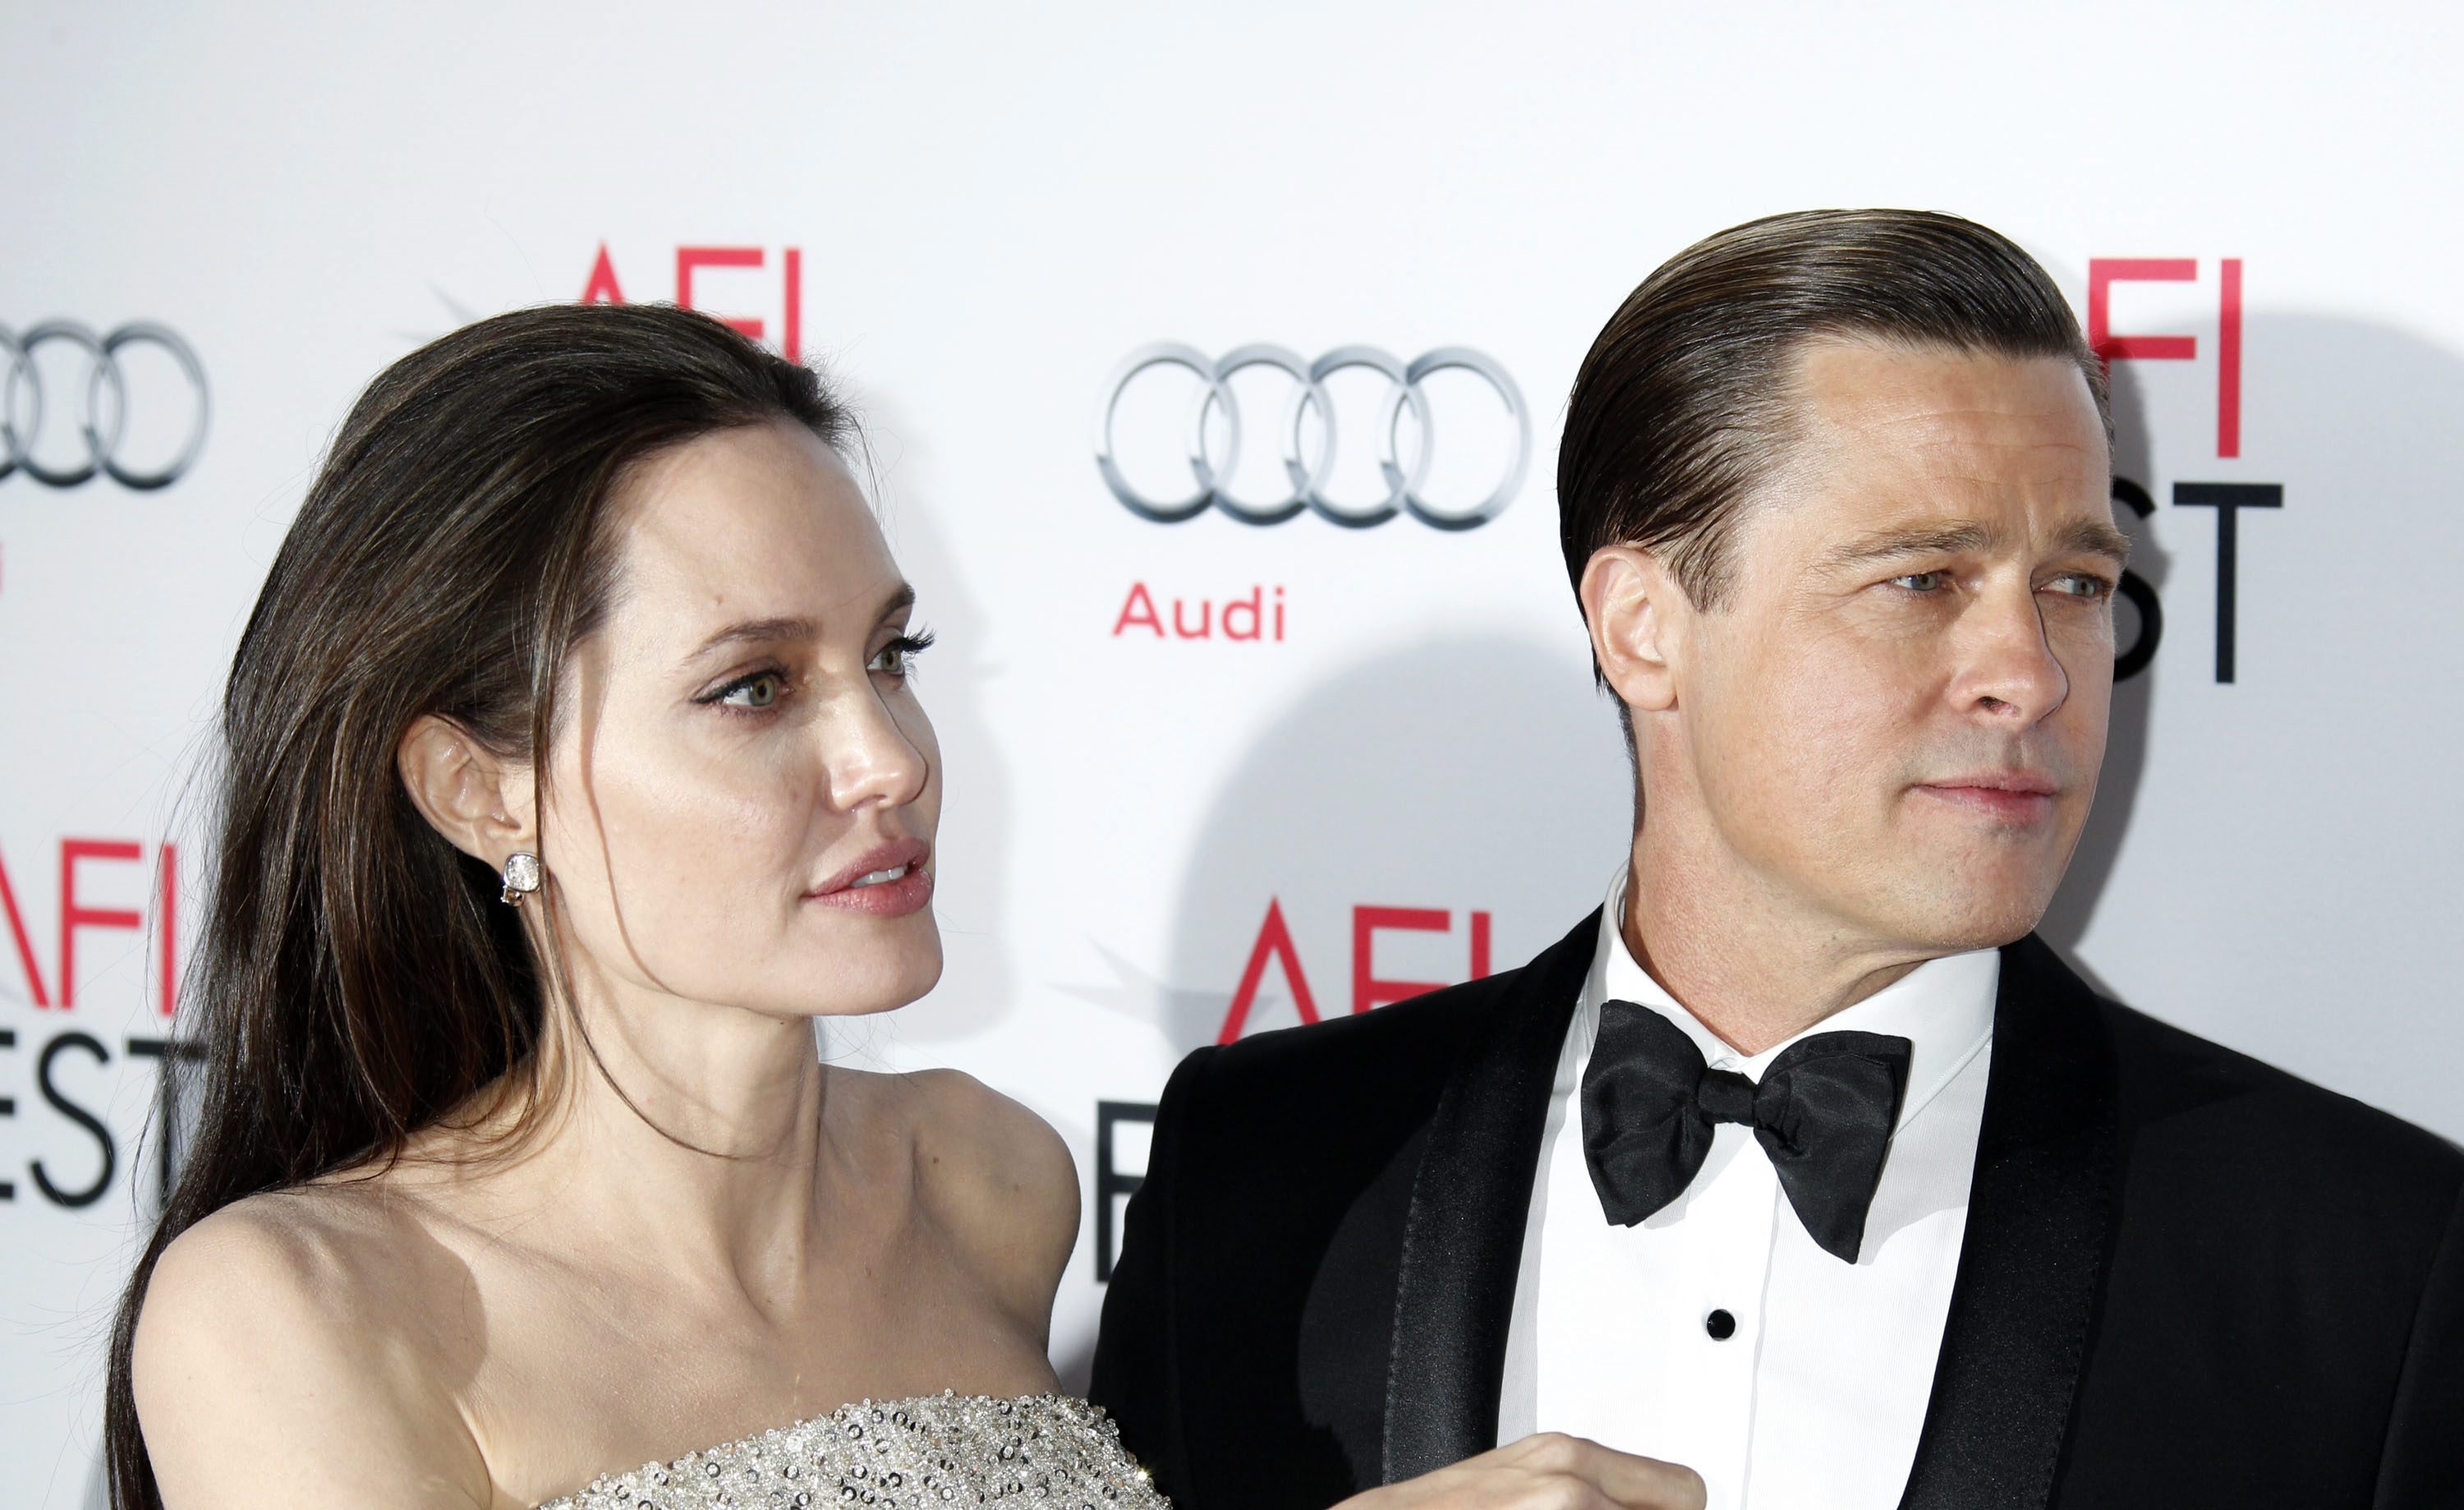 Angelina Jolie en Brad Pitt gaan uit elkaar. Jolie heeft een verzoek om echtscheiding ingediend, liet haar advocaat dinsdag weten.